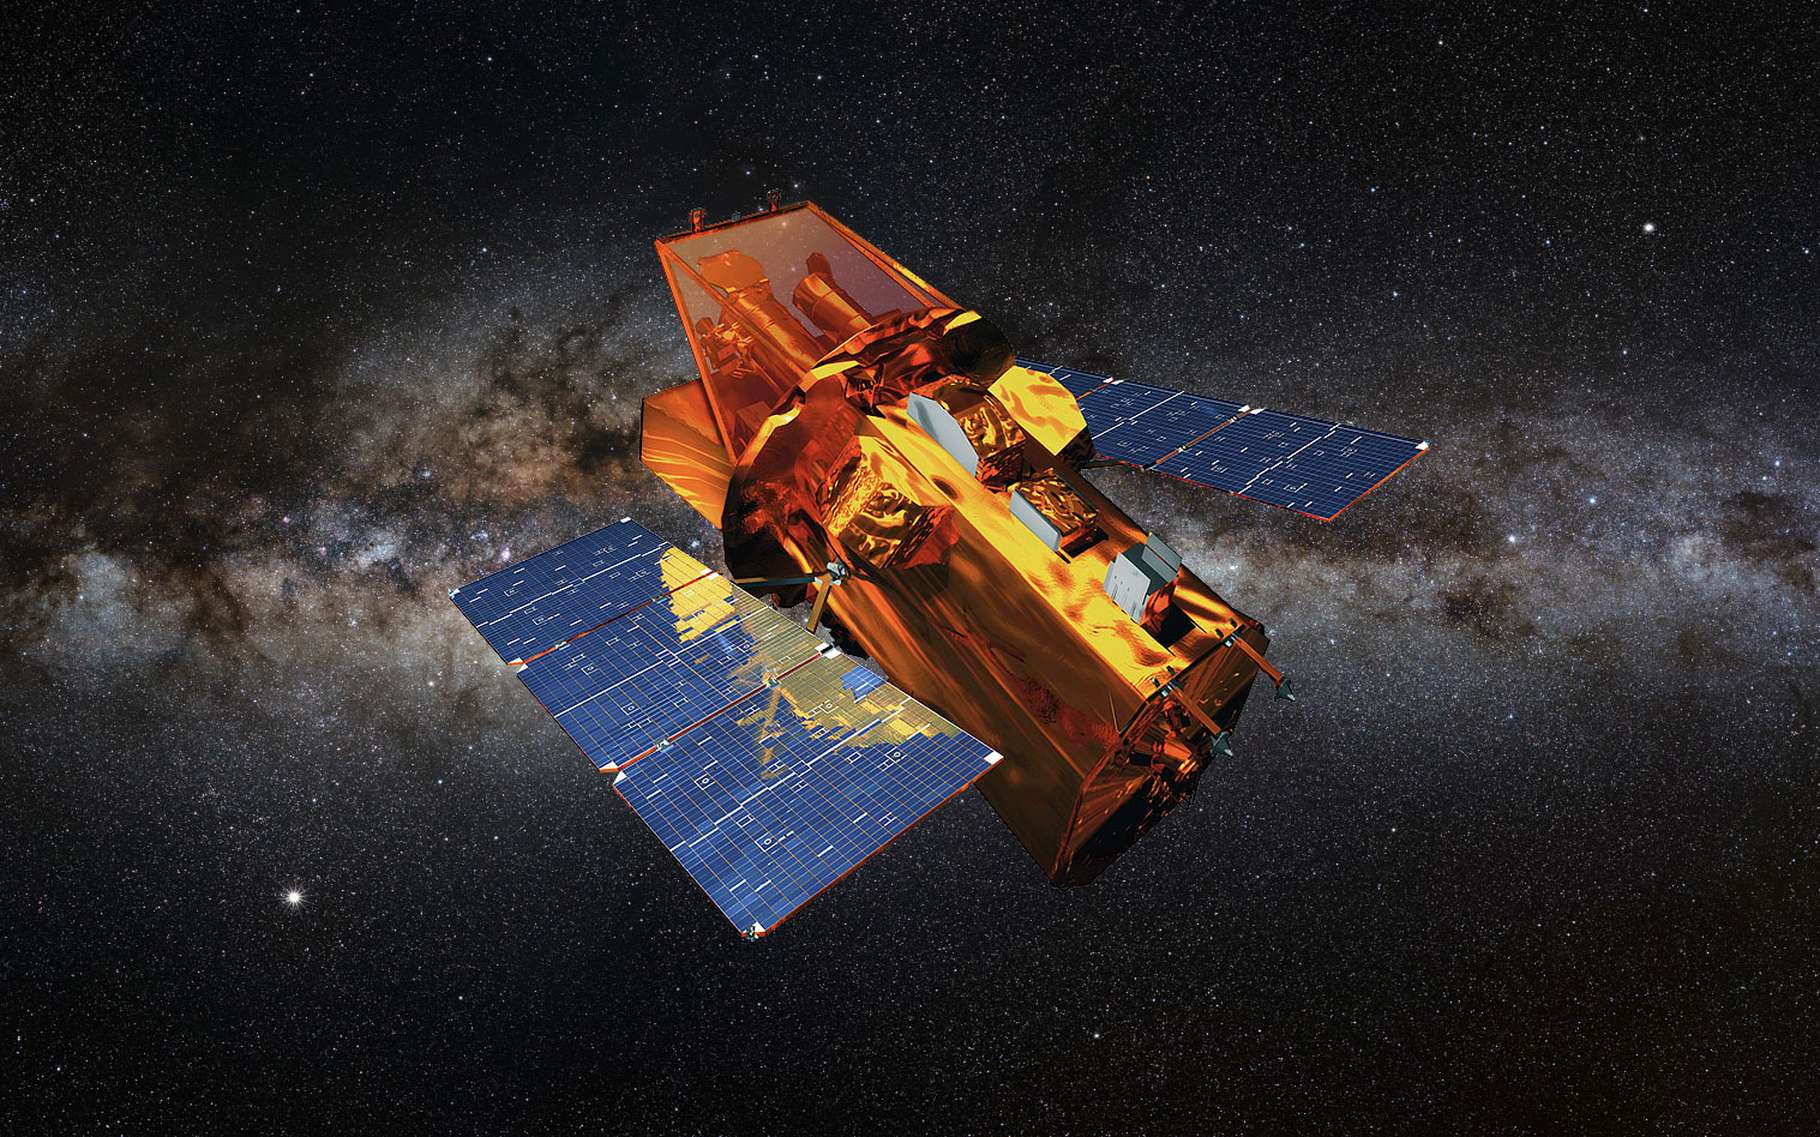 Космическая обсерватория Swift вошла в безопасный режим из-за утери управления ориентацией